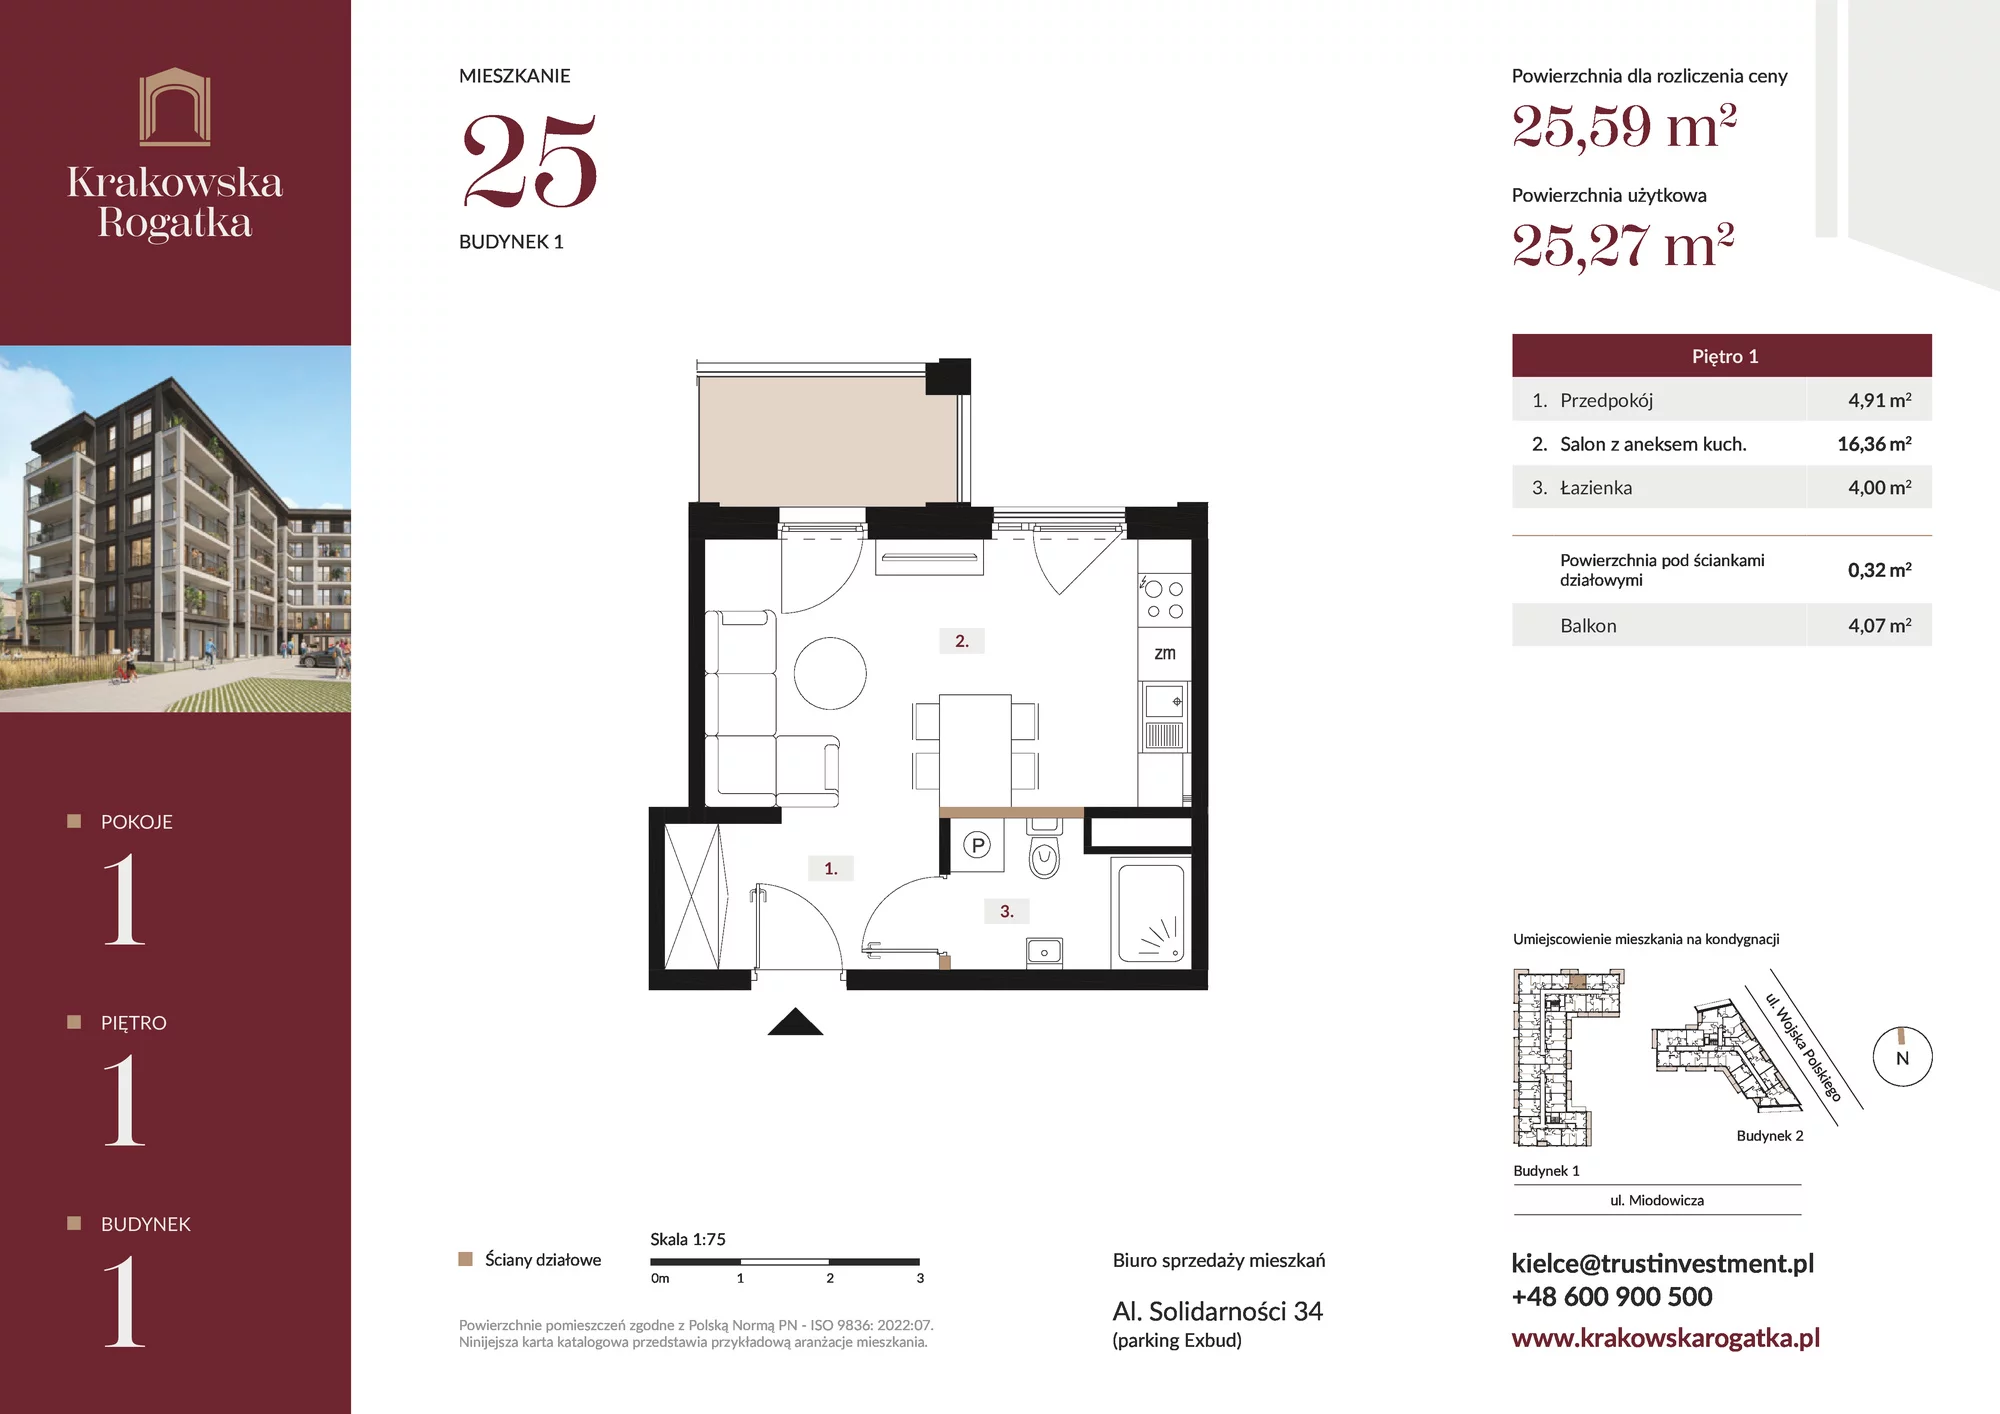 Mieszkanie 25,59 m², piętro 1, oferta nr Budynek 1 Mieszkanie 25, Krakowska Rogatka, Kielce, ul. Miodowicza 1